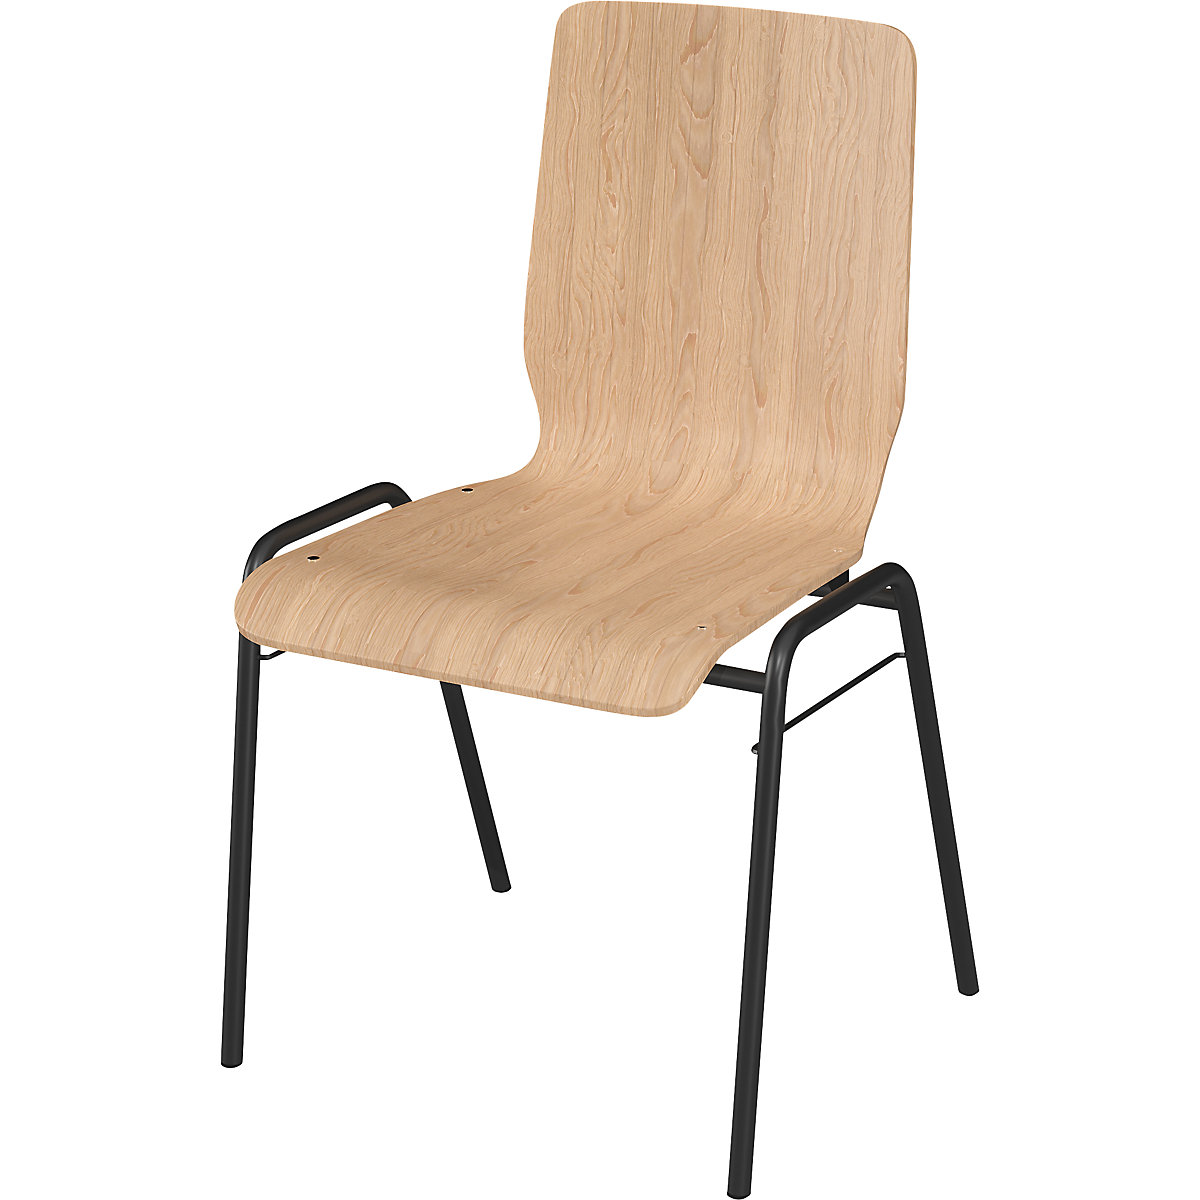 Drevená škrupinová stolička NUKI, podstavec s povrchovou úpravou, OJ 4 ks, drevo prírodný buk-5